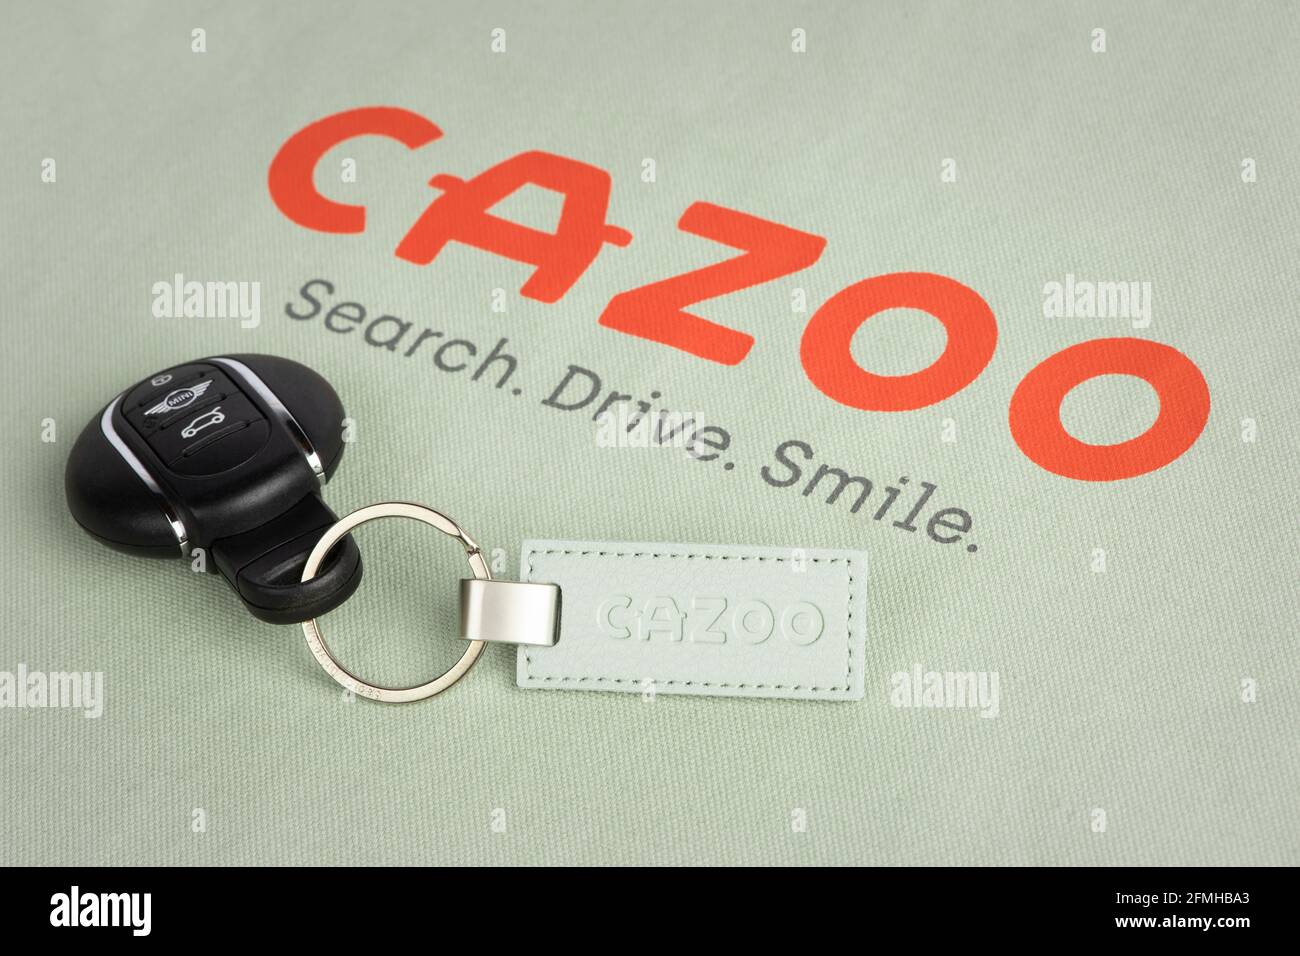 Le logo du détaillant automobile en ligne Cazoo tel qu'il apparaît sur l'un des sacs fourre-tout et porte-clés de la société. Banque D'Images